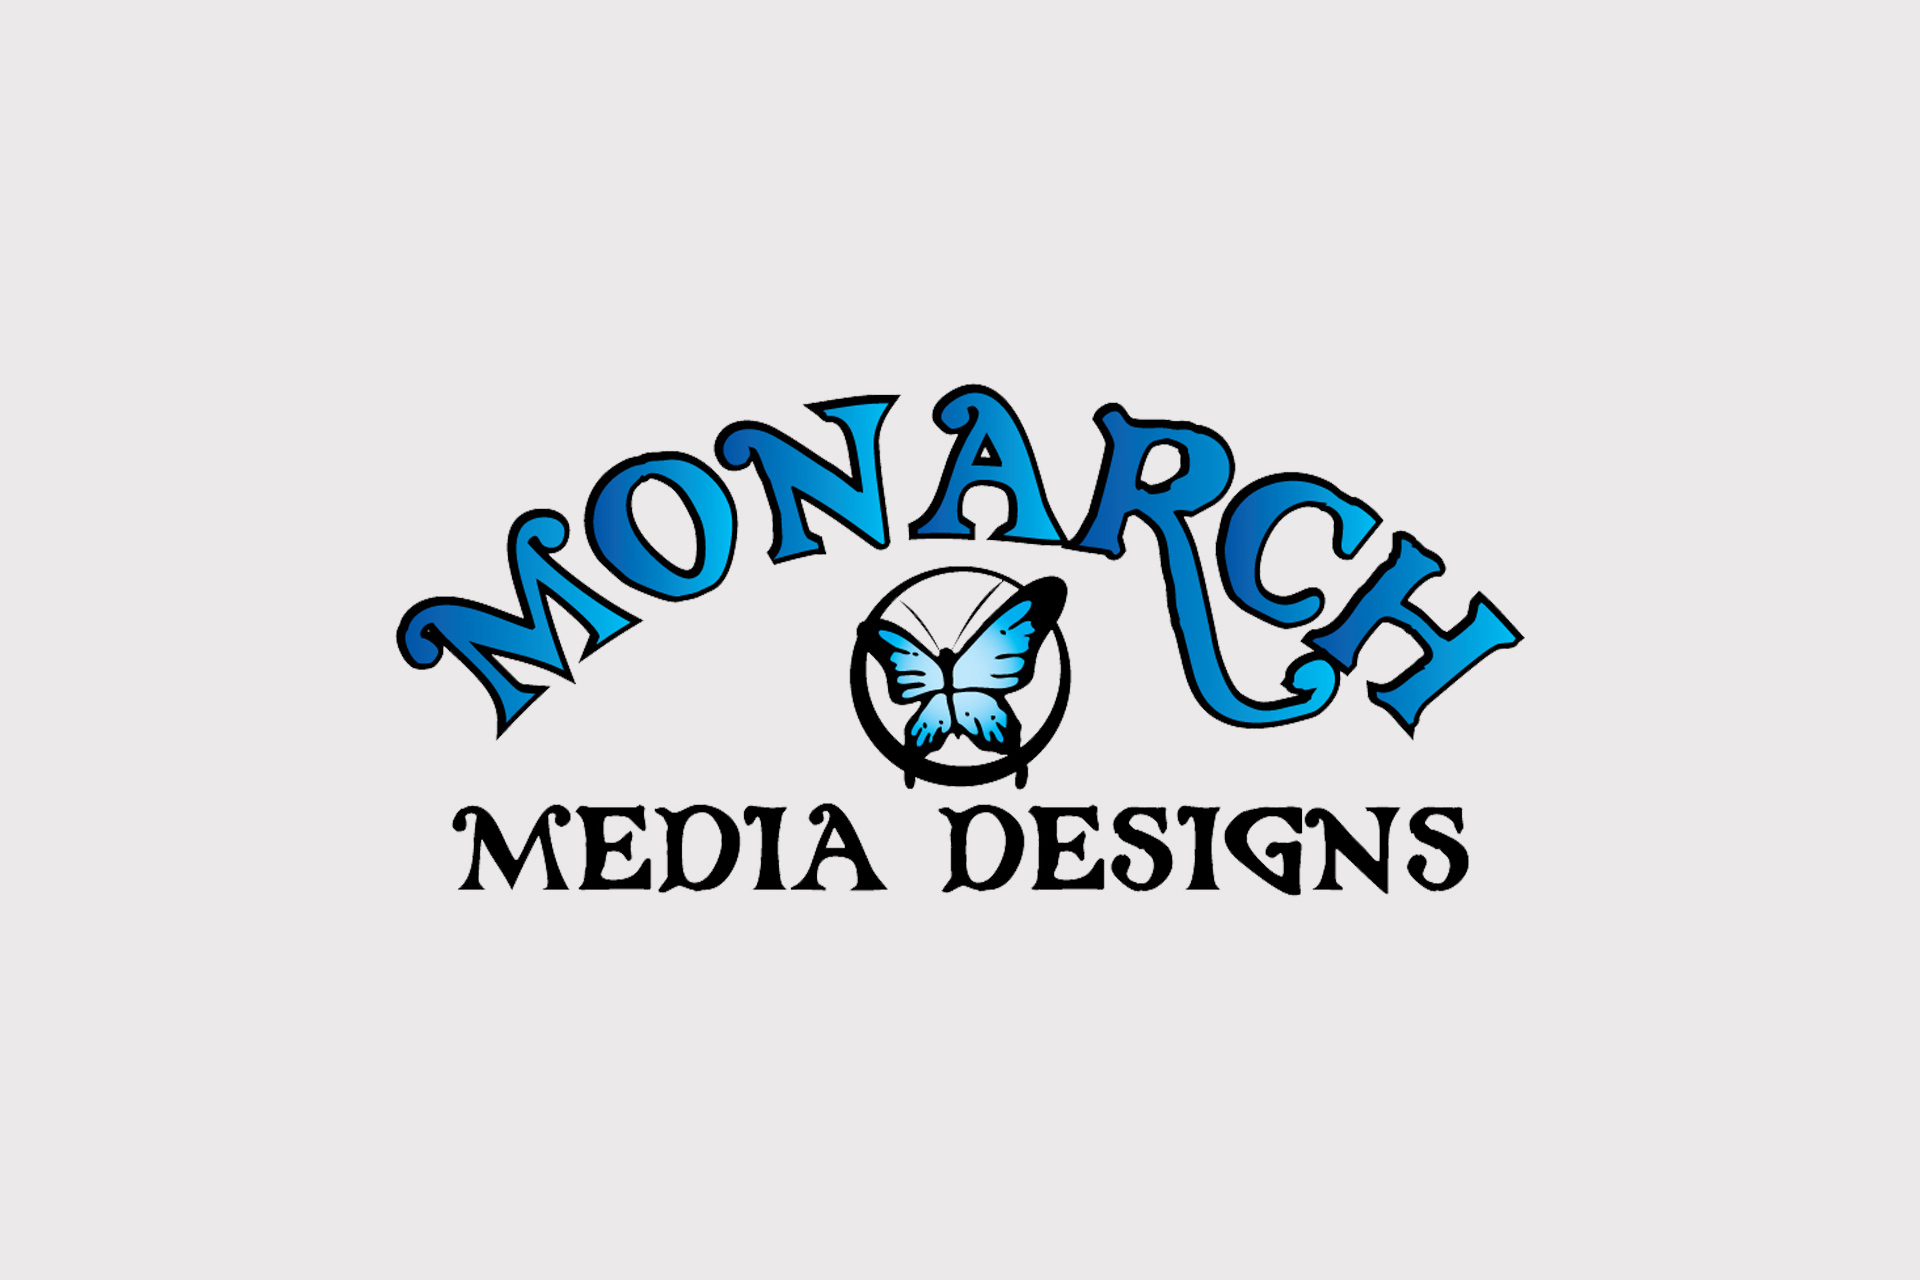 Monarch Media Designs